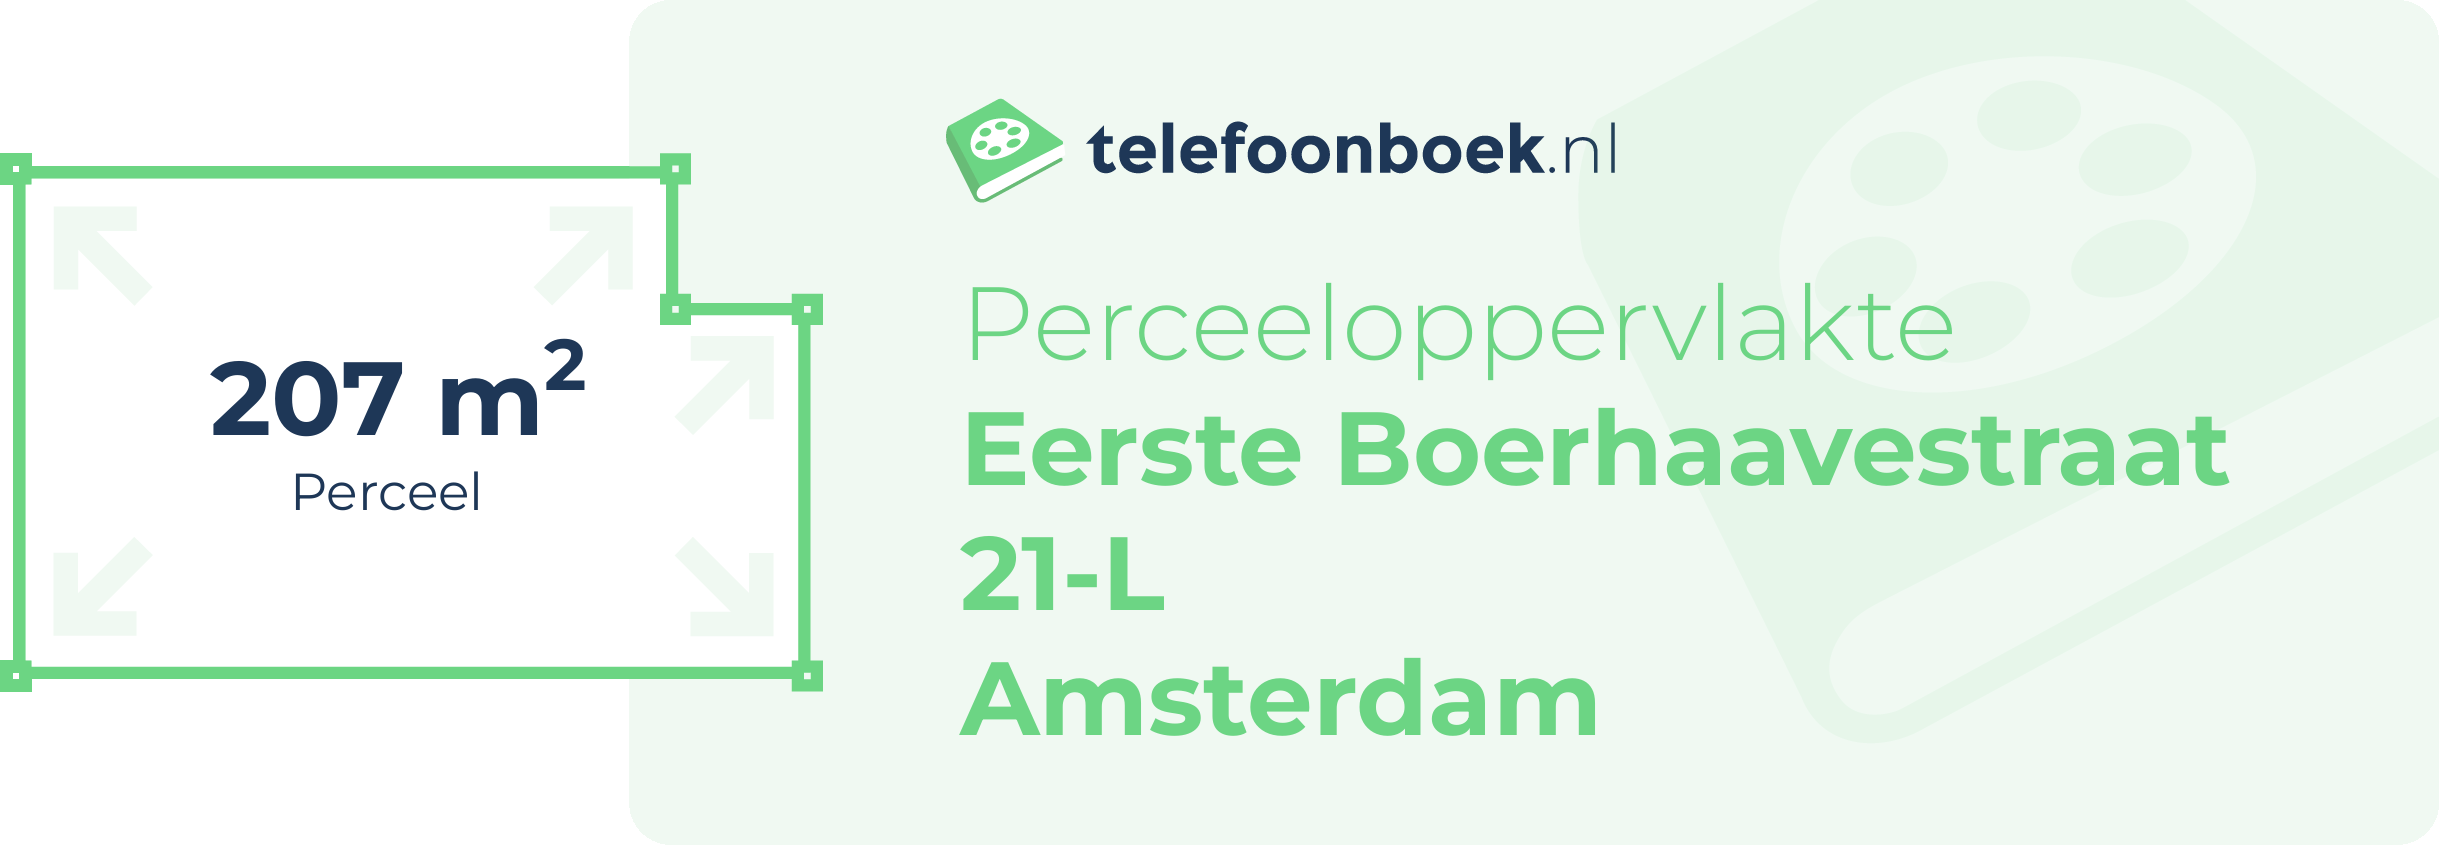 Perceeloppervlakte Eerste Boerhaavestraat 21-L Amsterdam